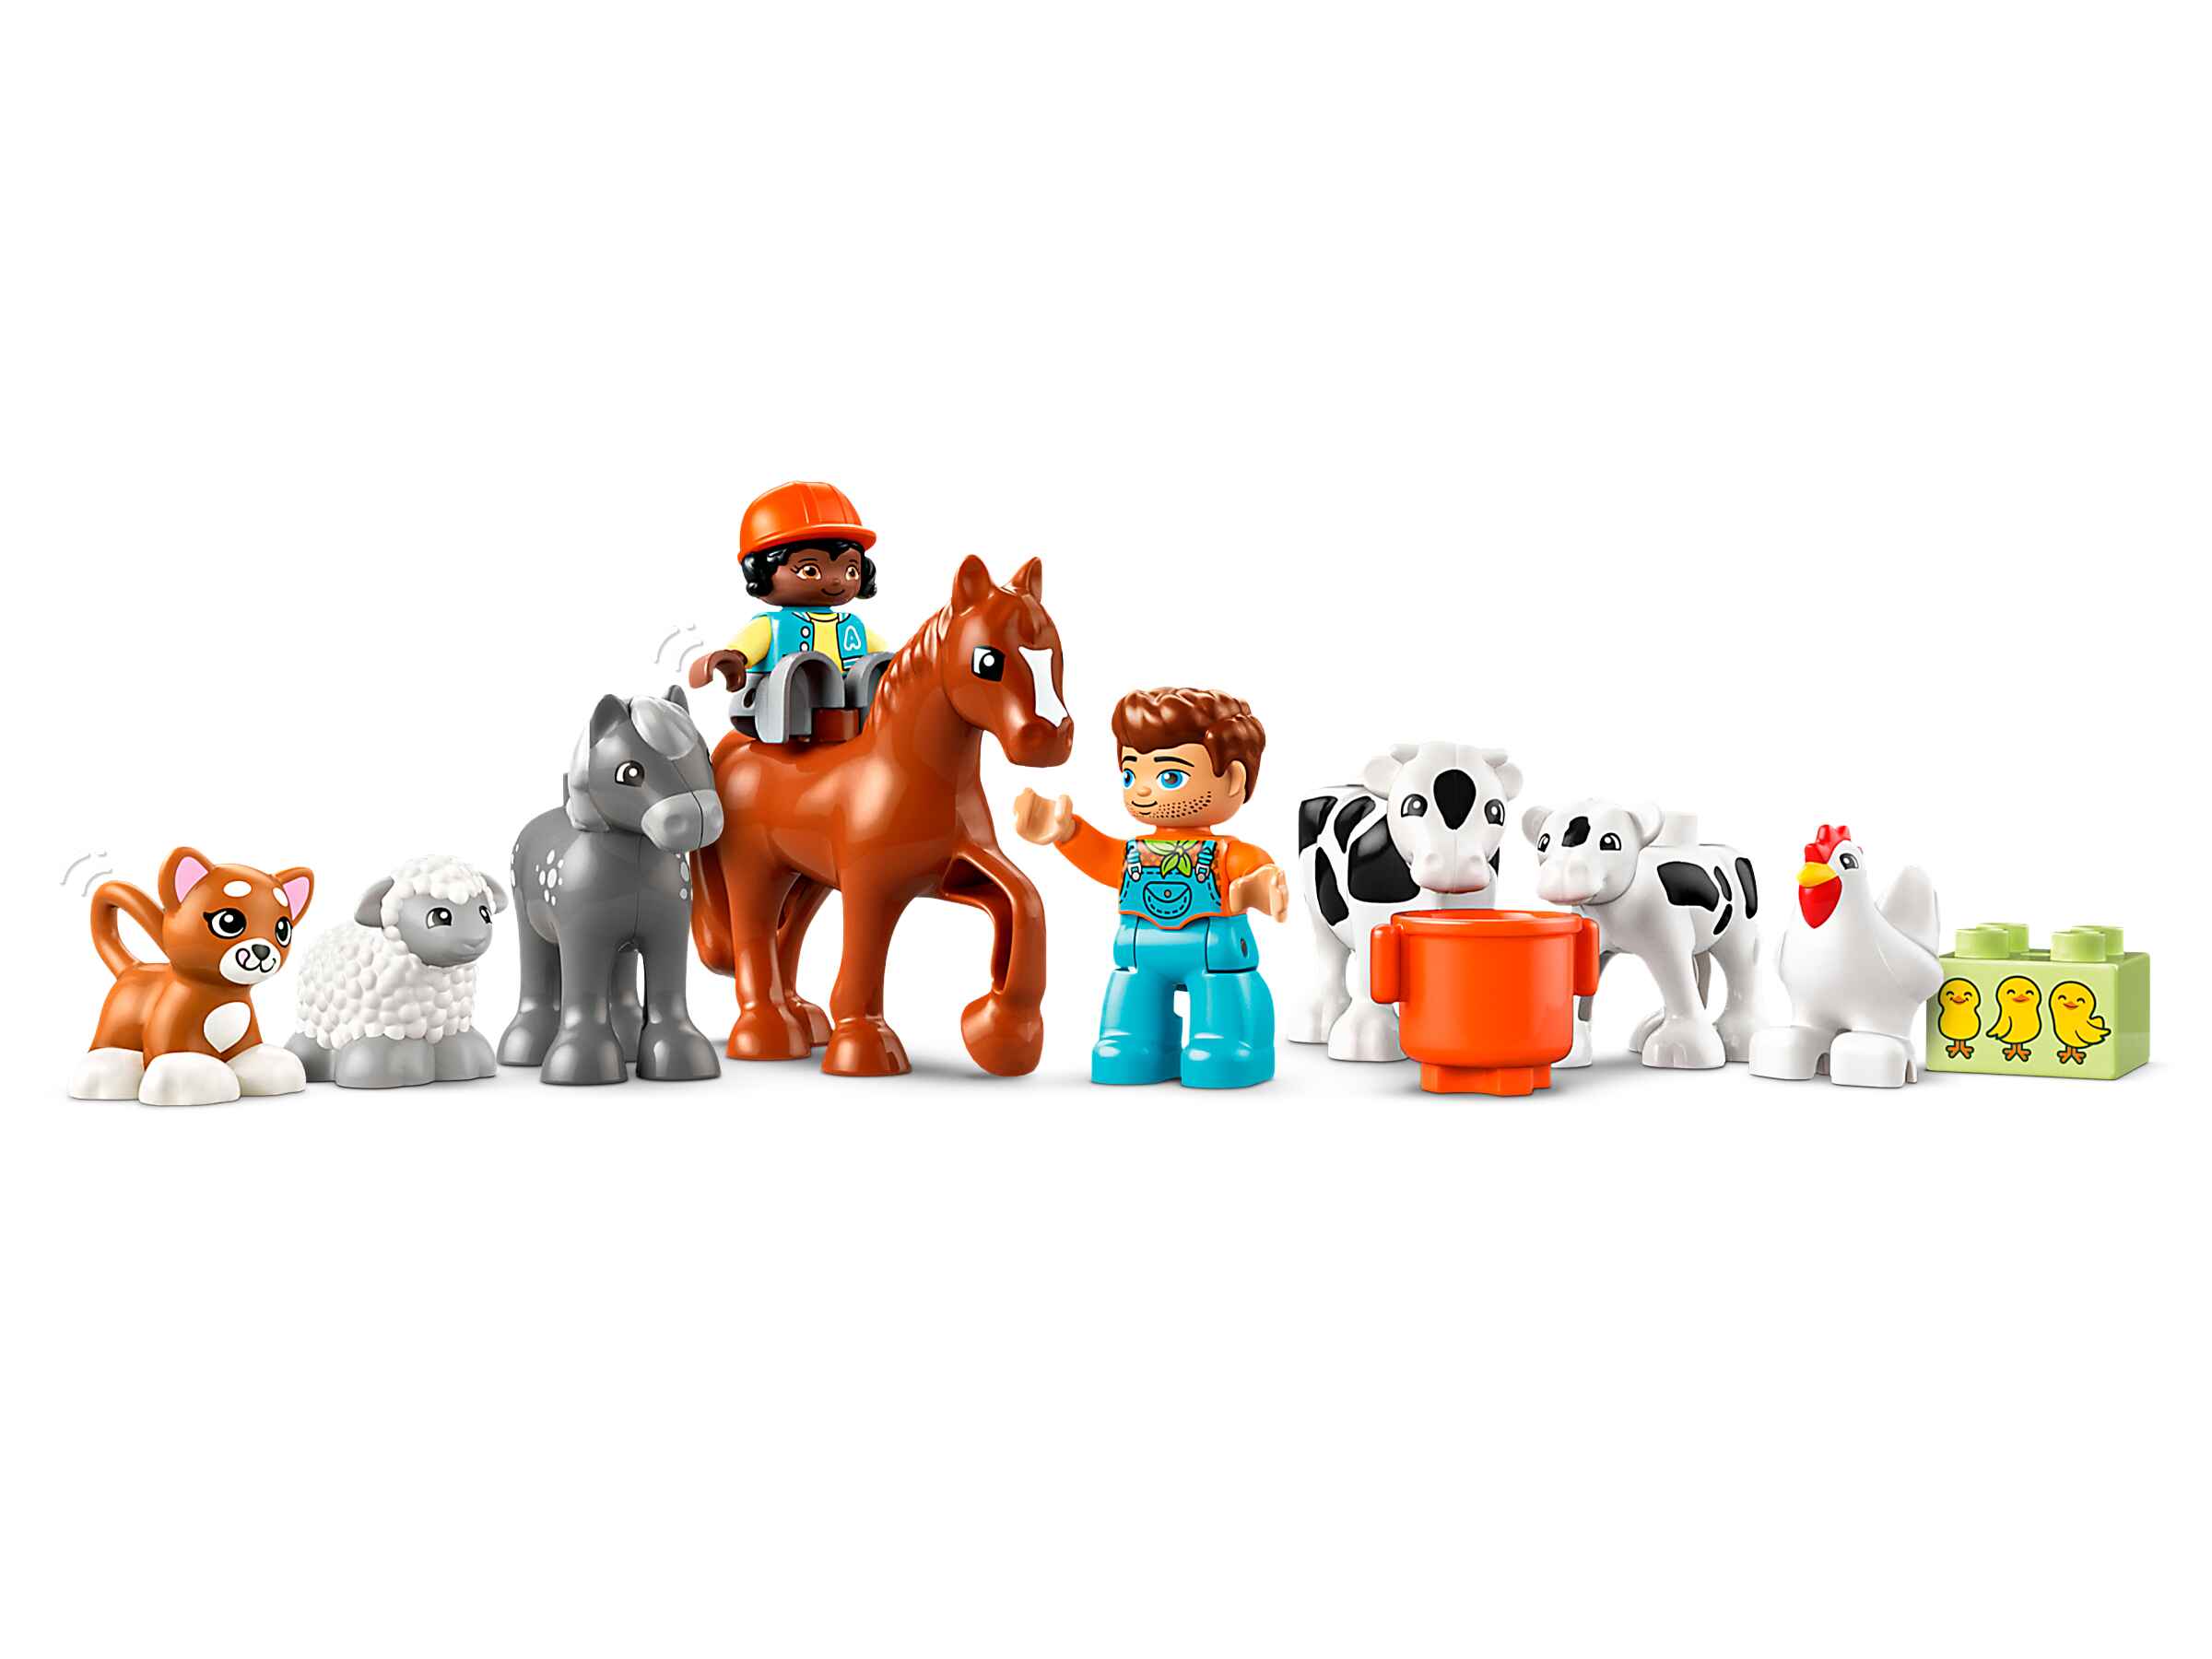 LEGO 10416 DUPLO Tierpflege auf dem Bauernhof, 2 Personen, 8 Tierfiguren